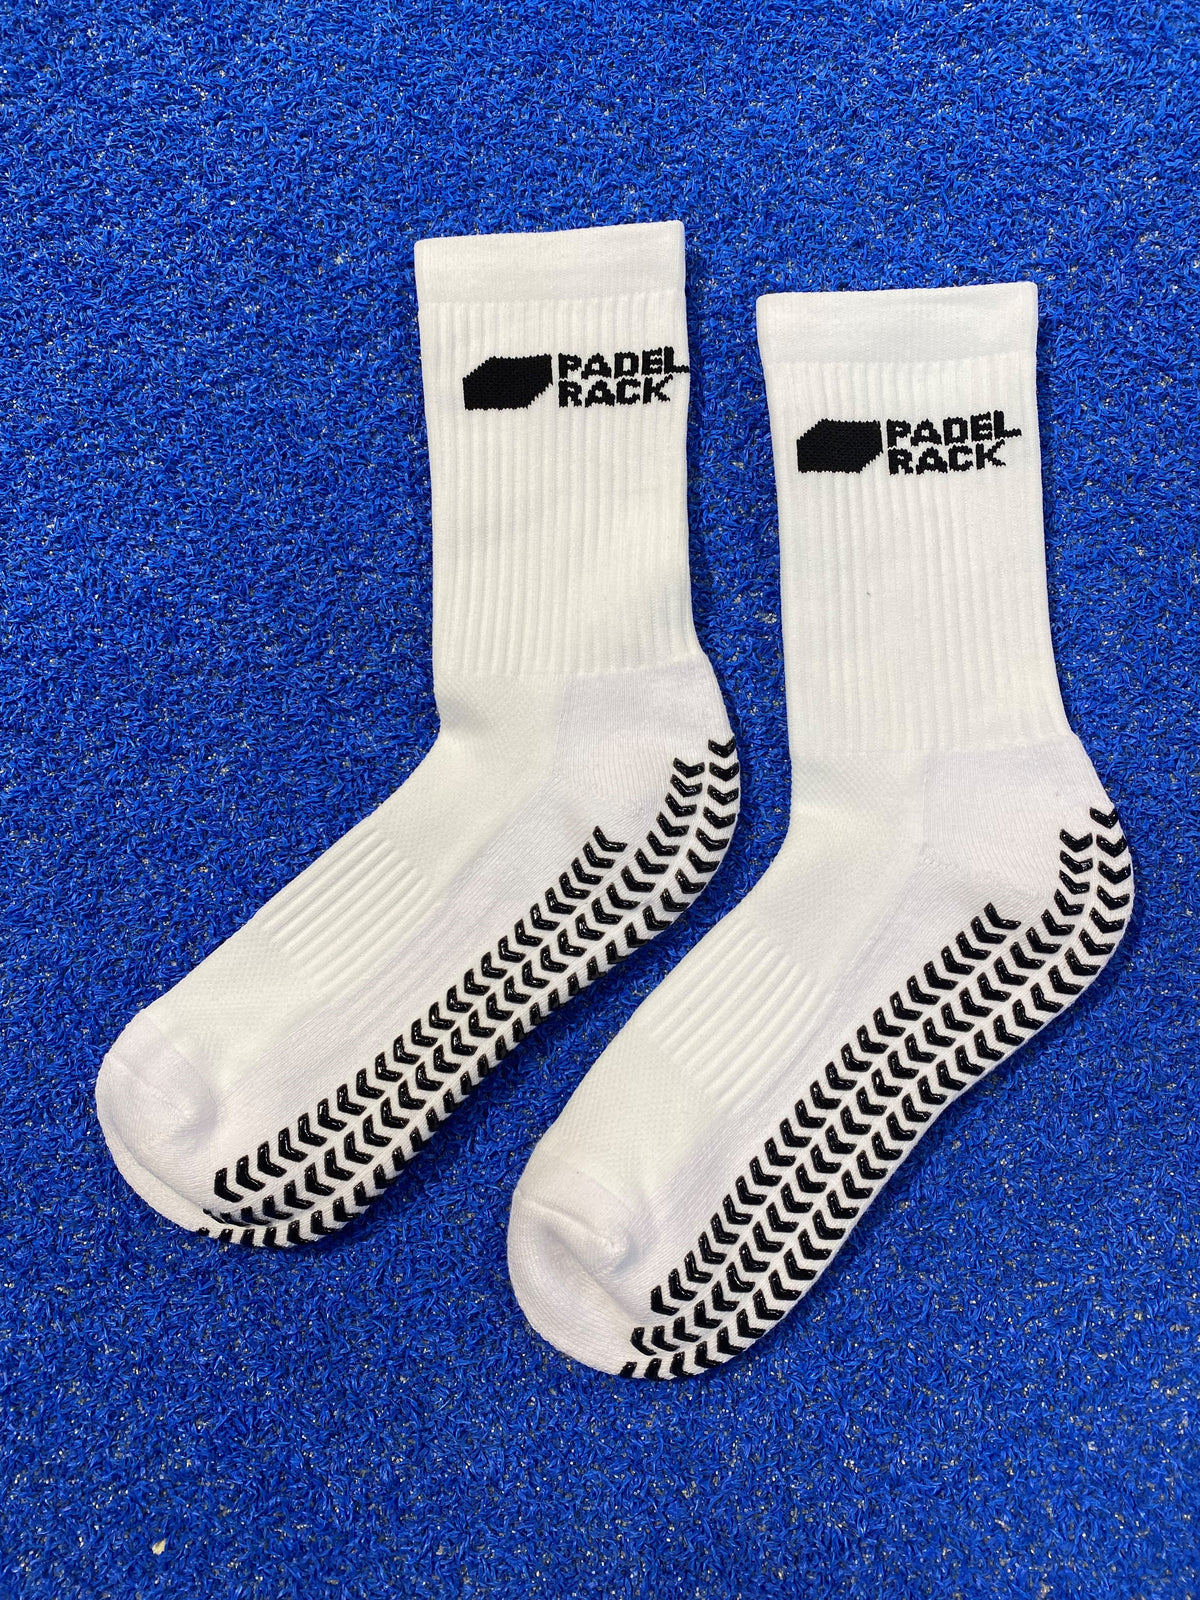 Padelrack Grip Socks - White